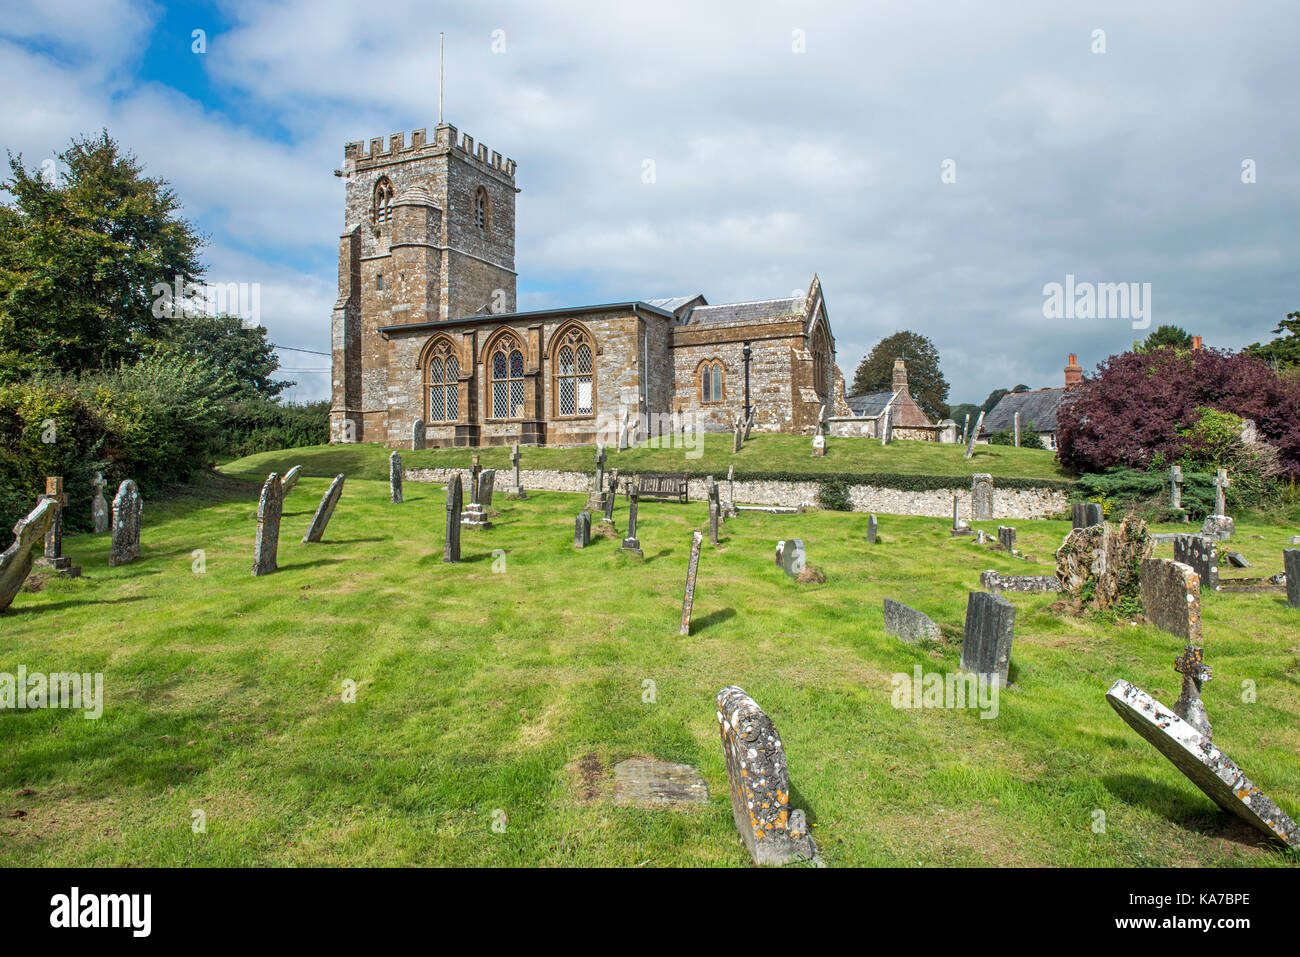 Toller Porcorum Parish Church of St Andrew, Dorset Stock Photo